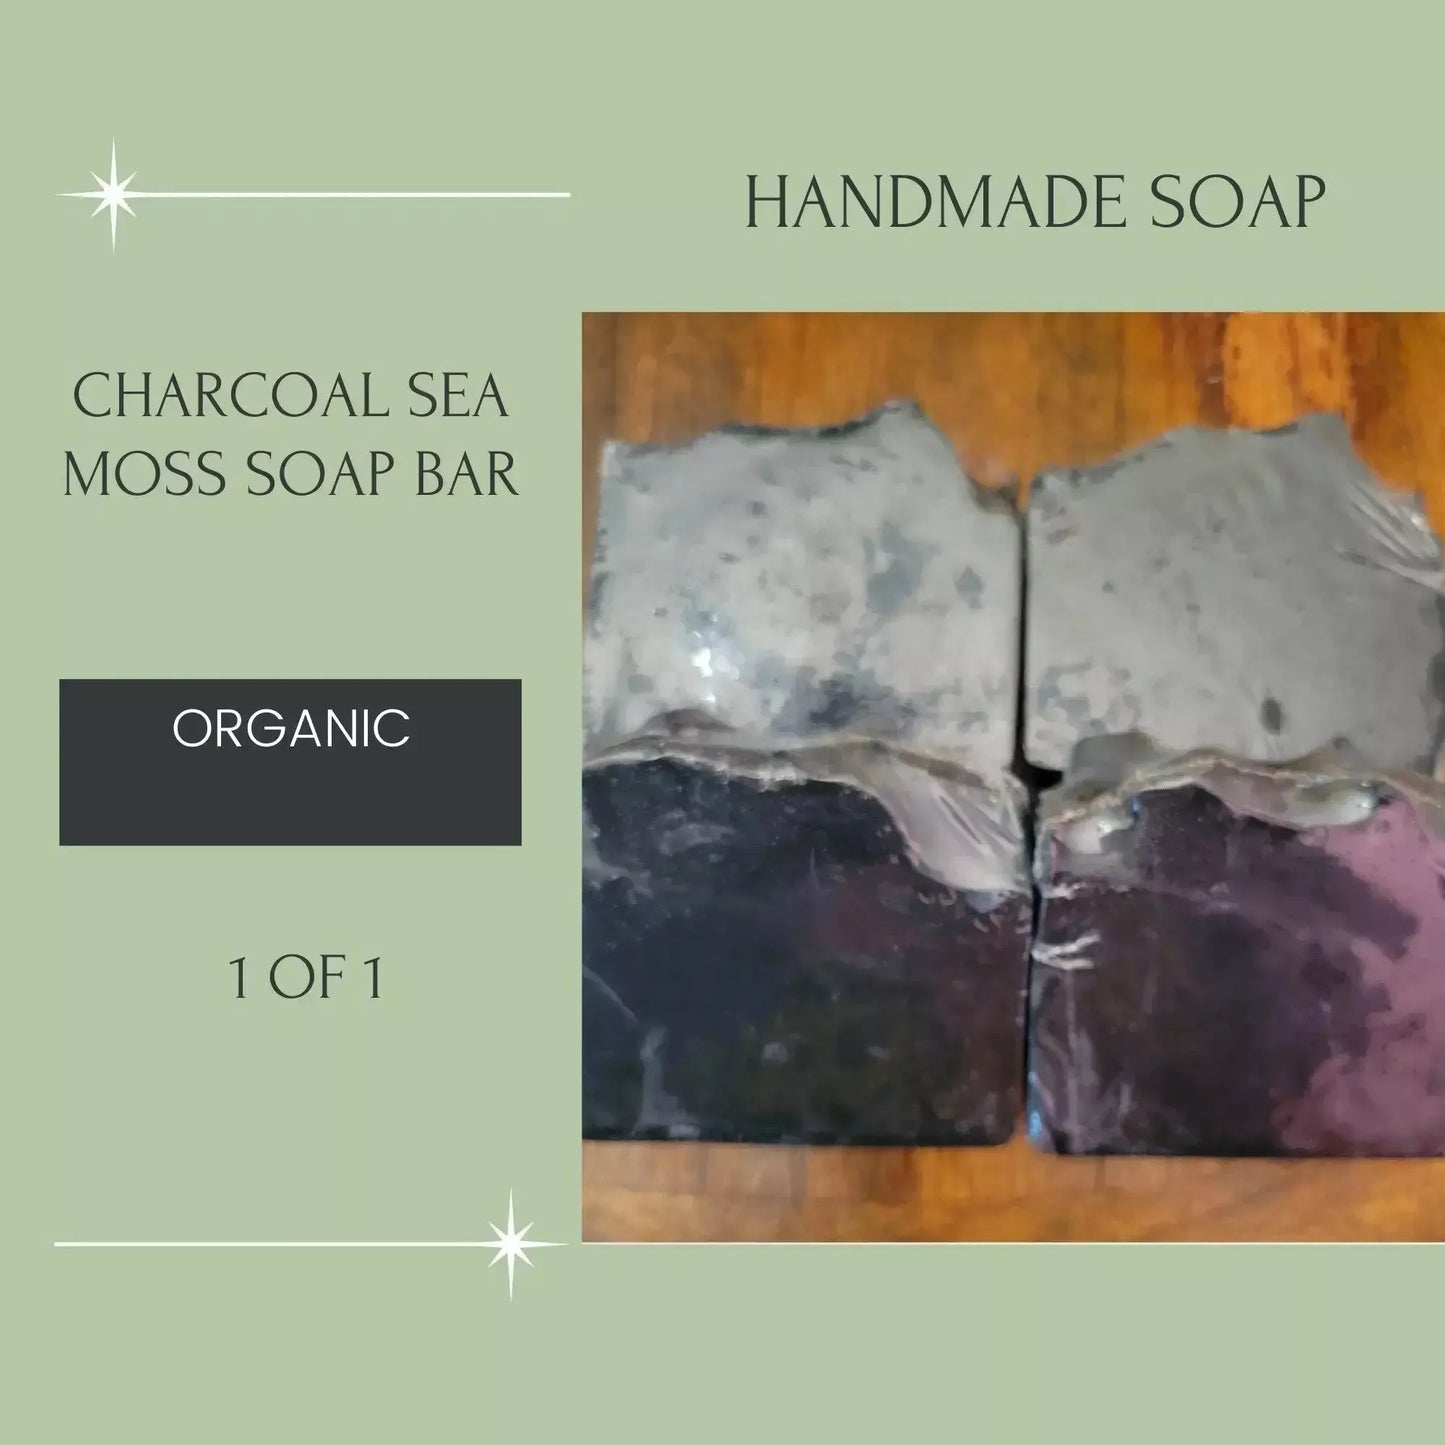 Charcoal Sea Moss Soap Bar - Godiva Oya Bey